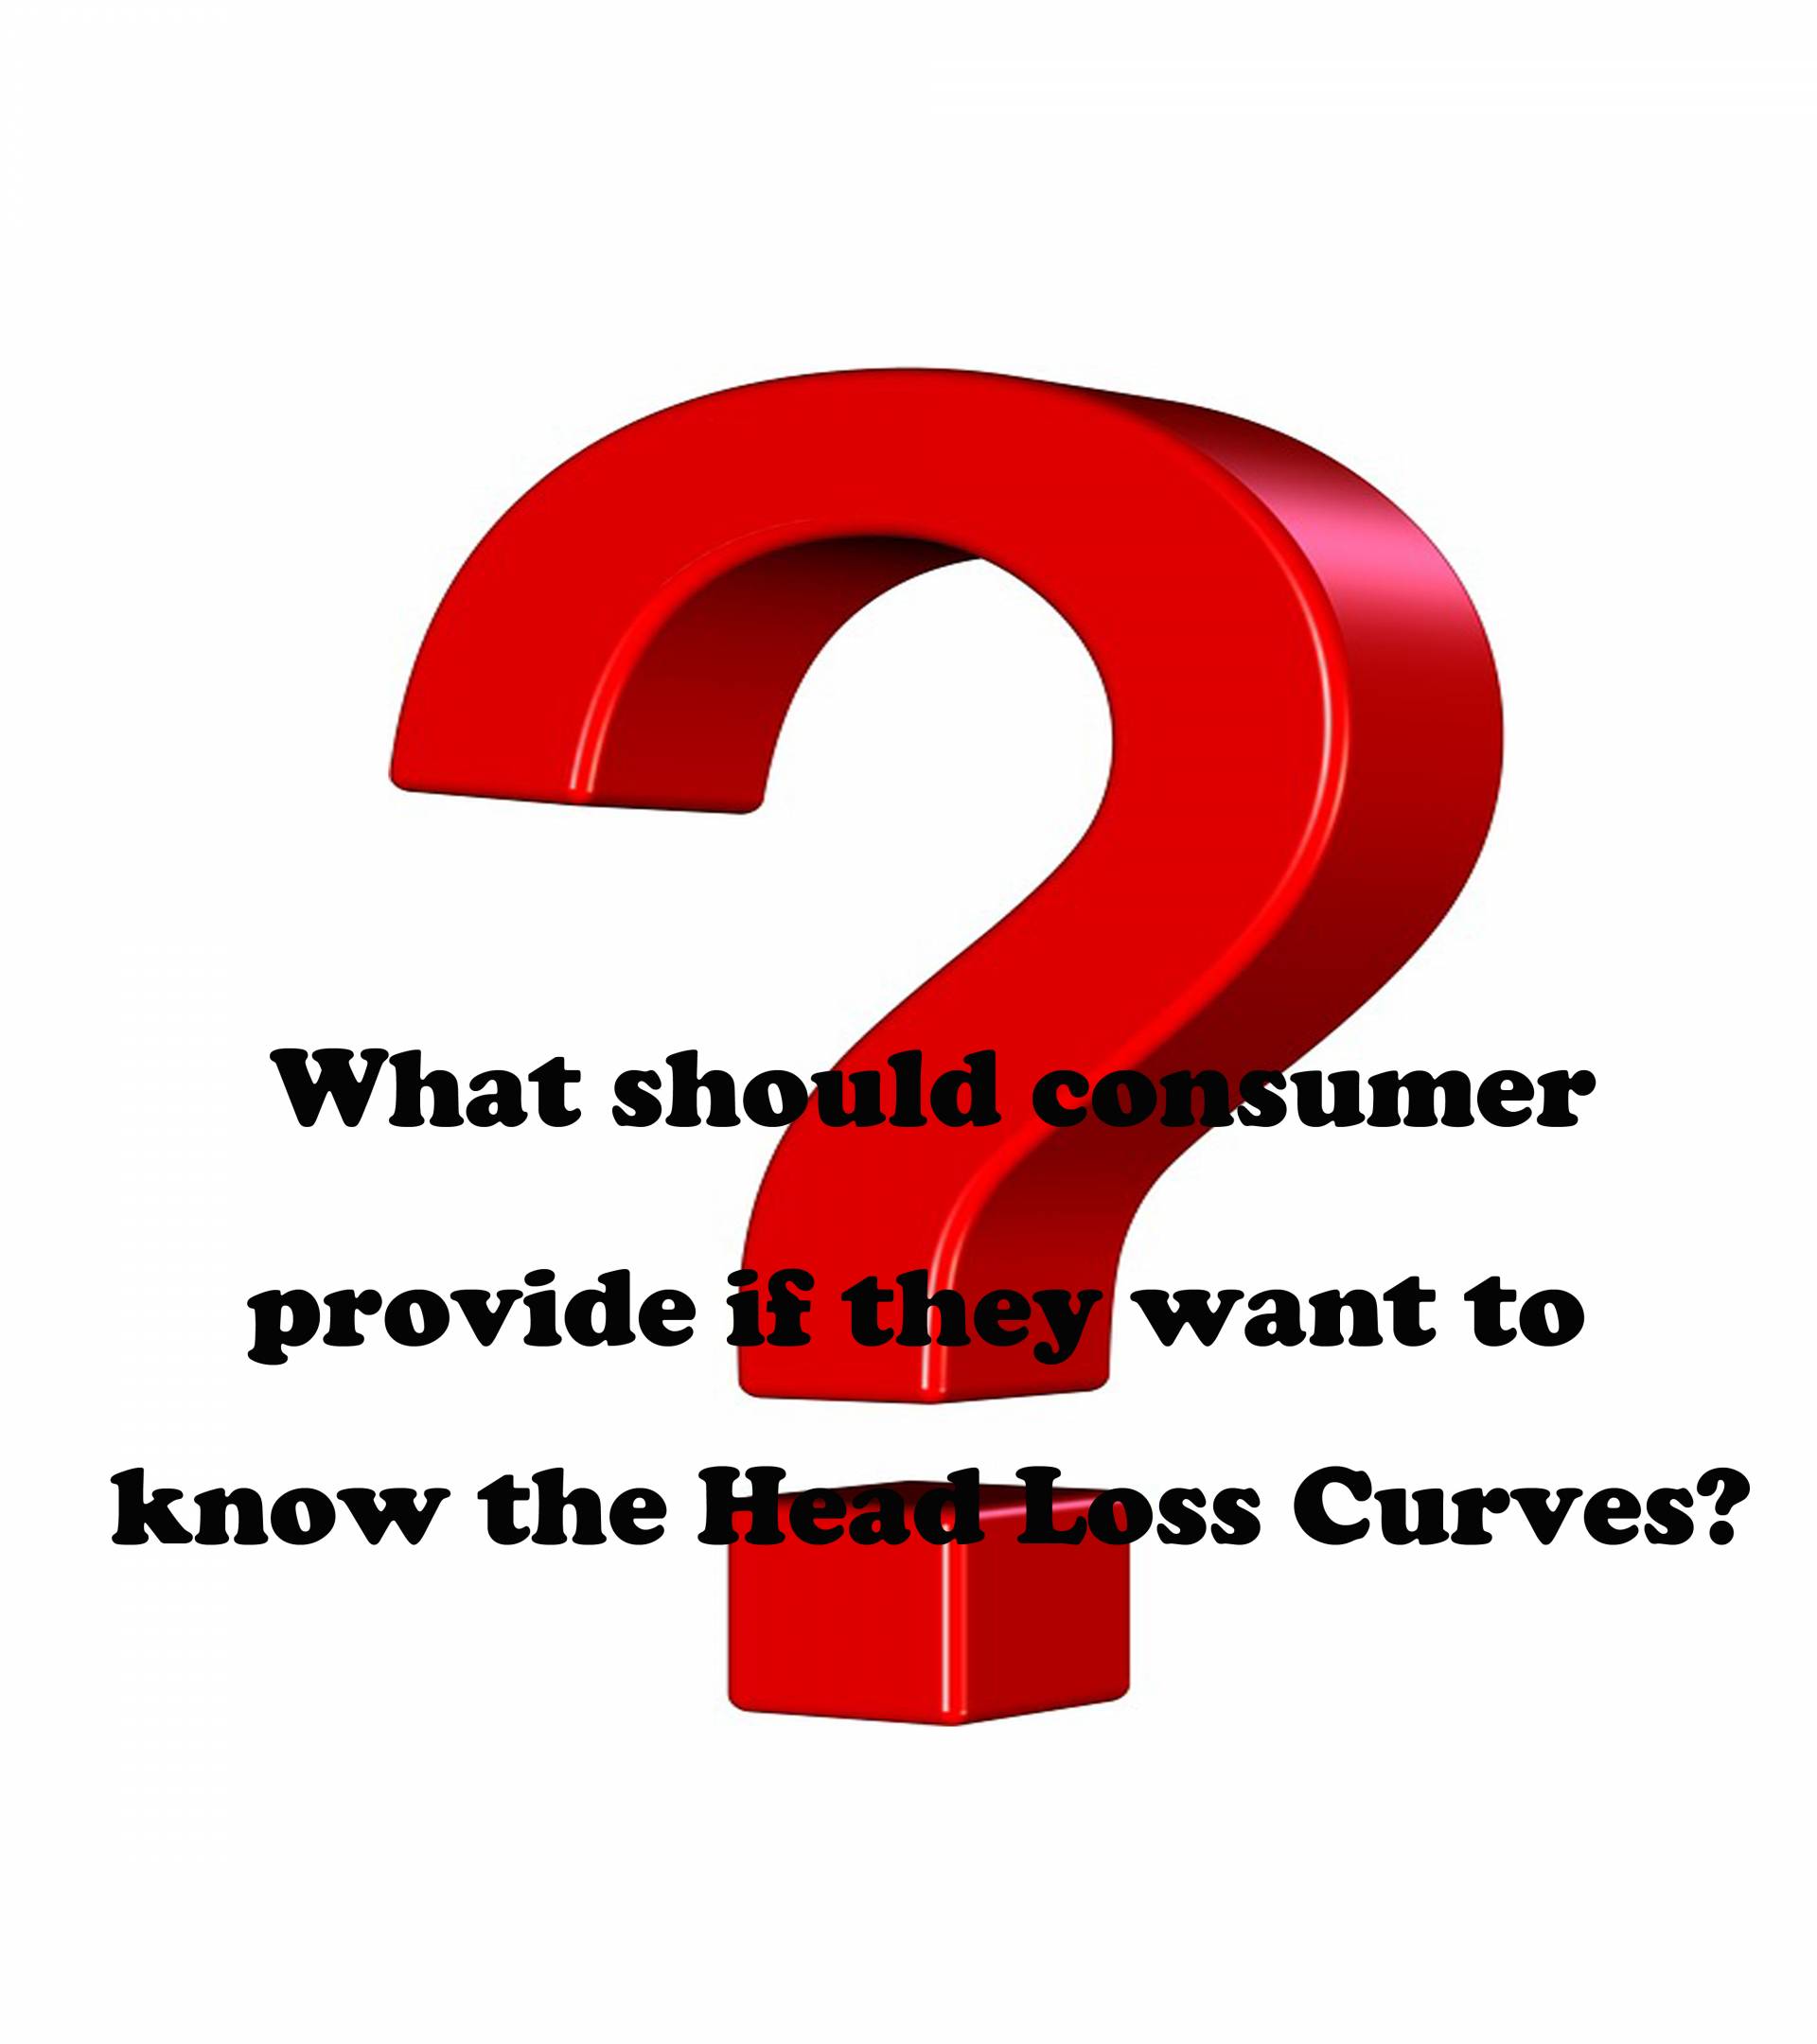 소비자가 Head Loss Curve를 알고 싶다면 어떤 정보를 제공해야 합니까?